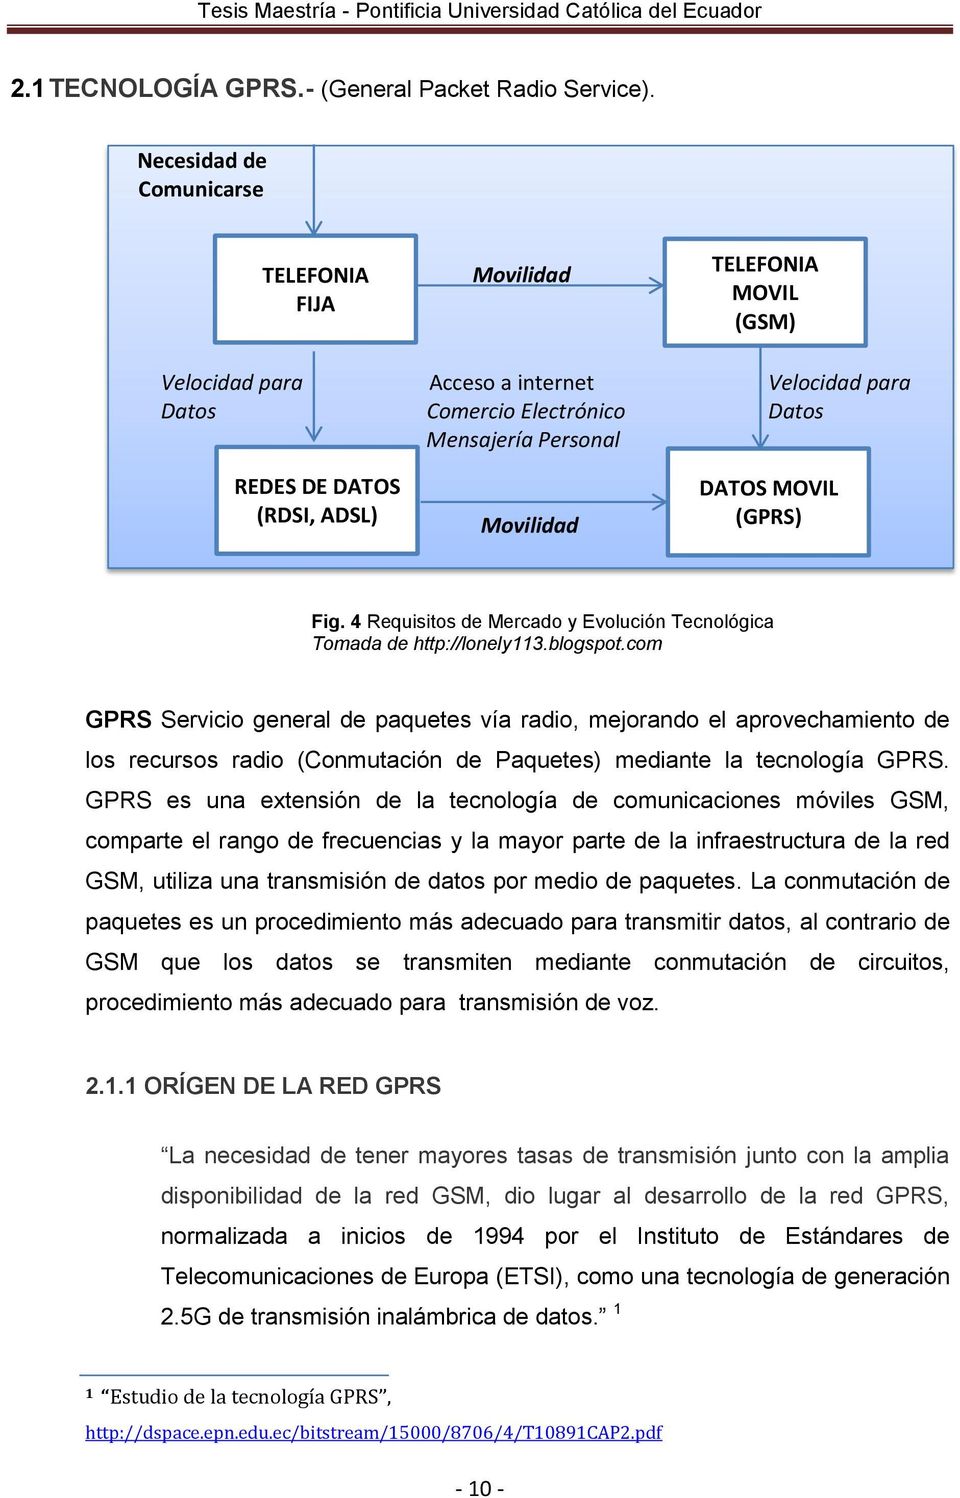 ADSL) Movilidad DATOS MOVIL (GPRS) Fig. 4 Requisitos de Mercado y Evolución Tecnológica Tomada de http://lonely113.blogspot.